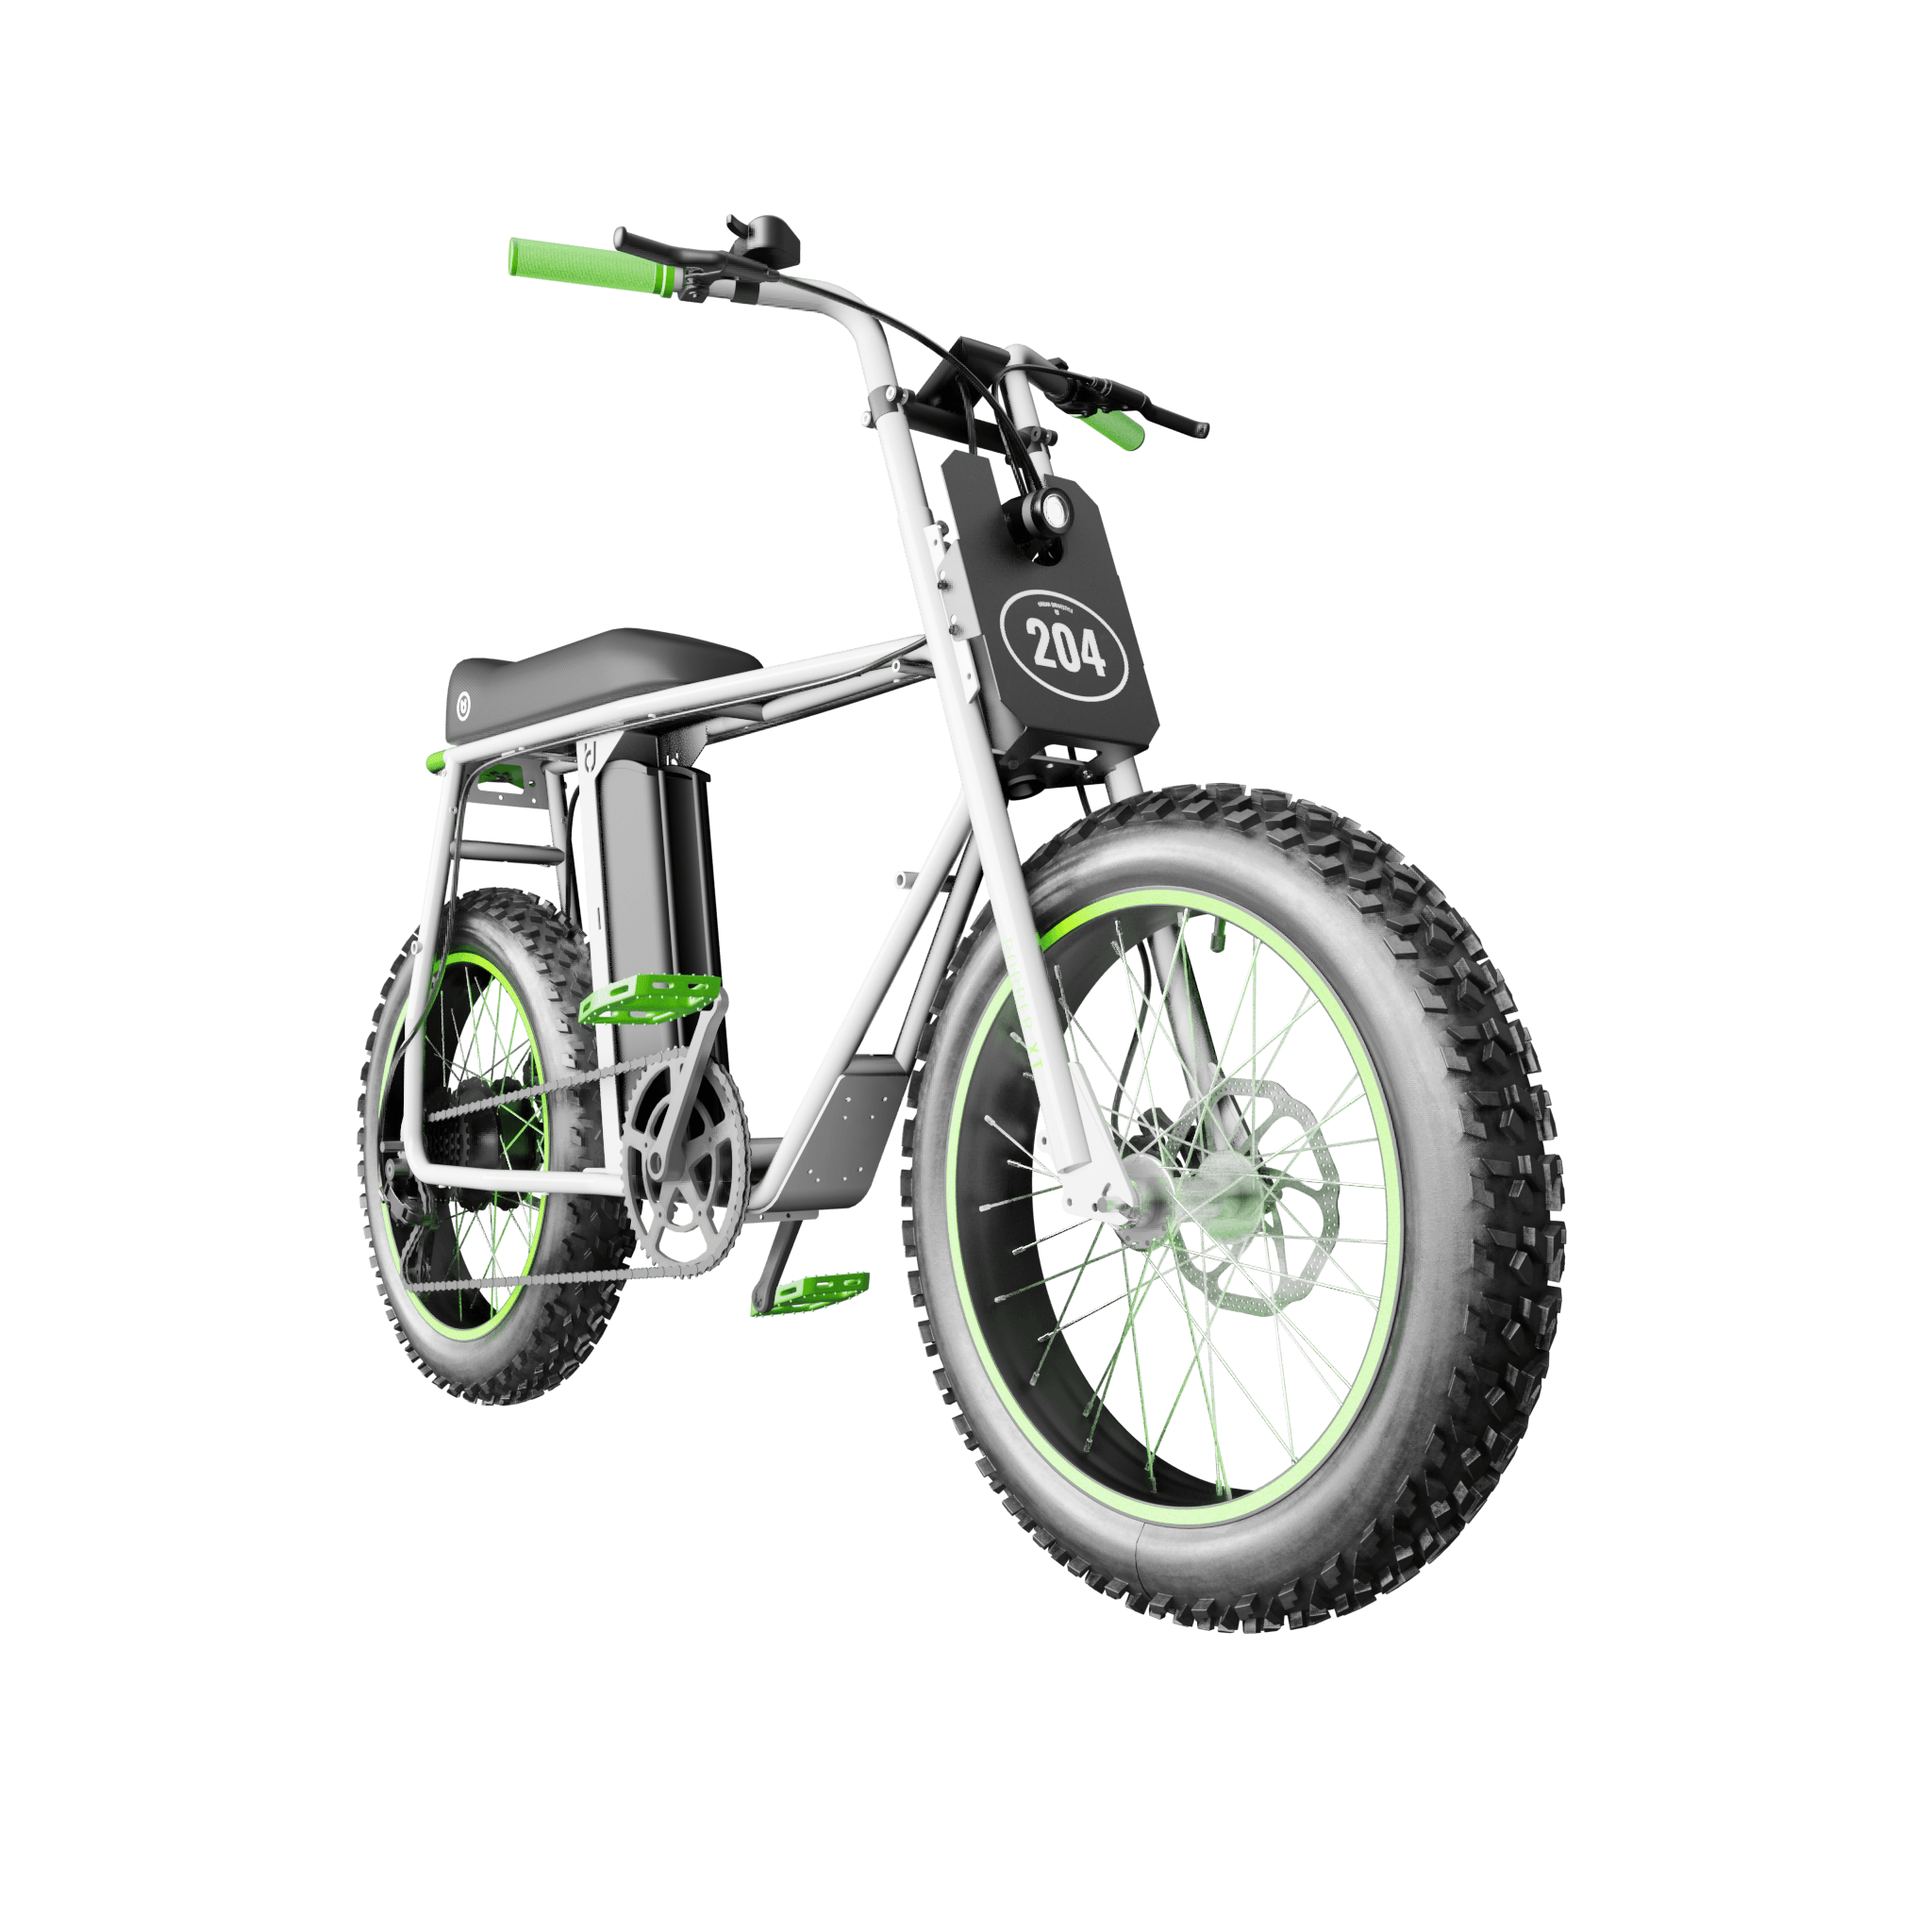 udx electric fat bike 1500w